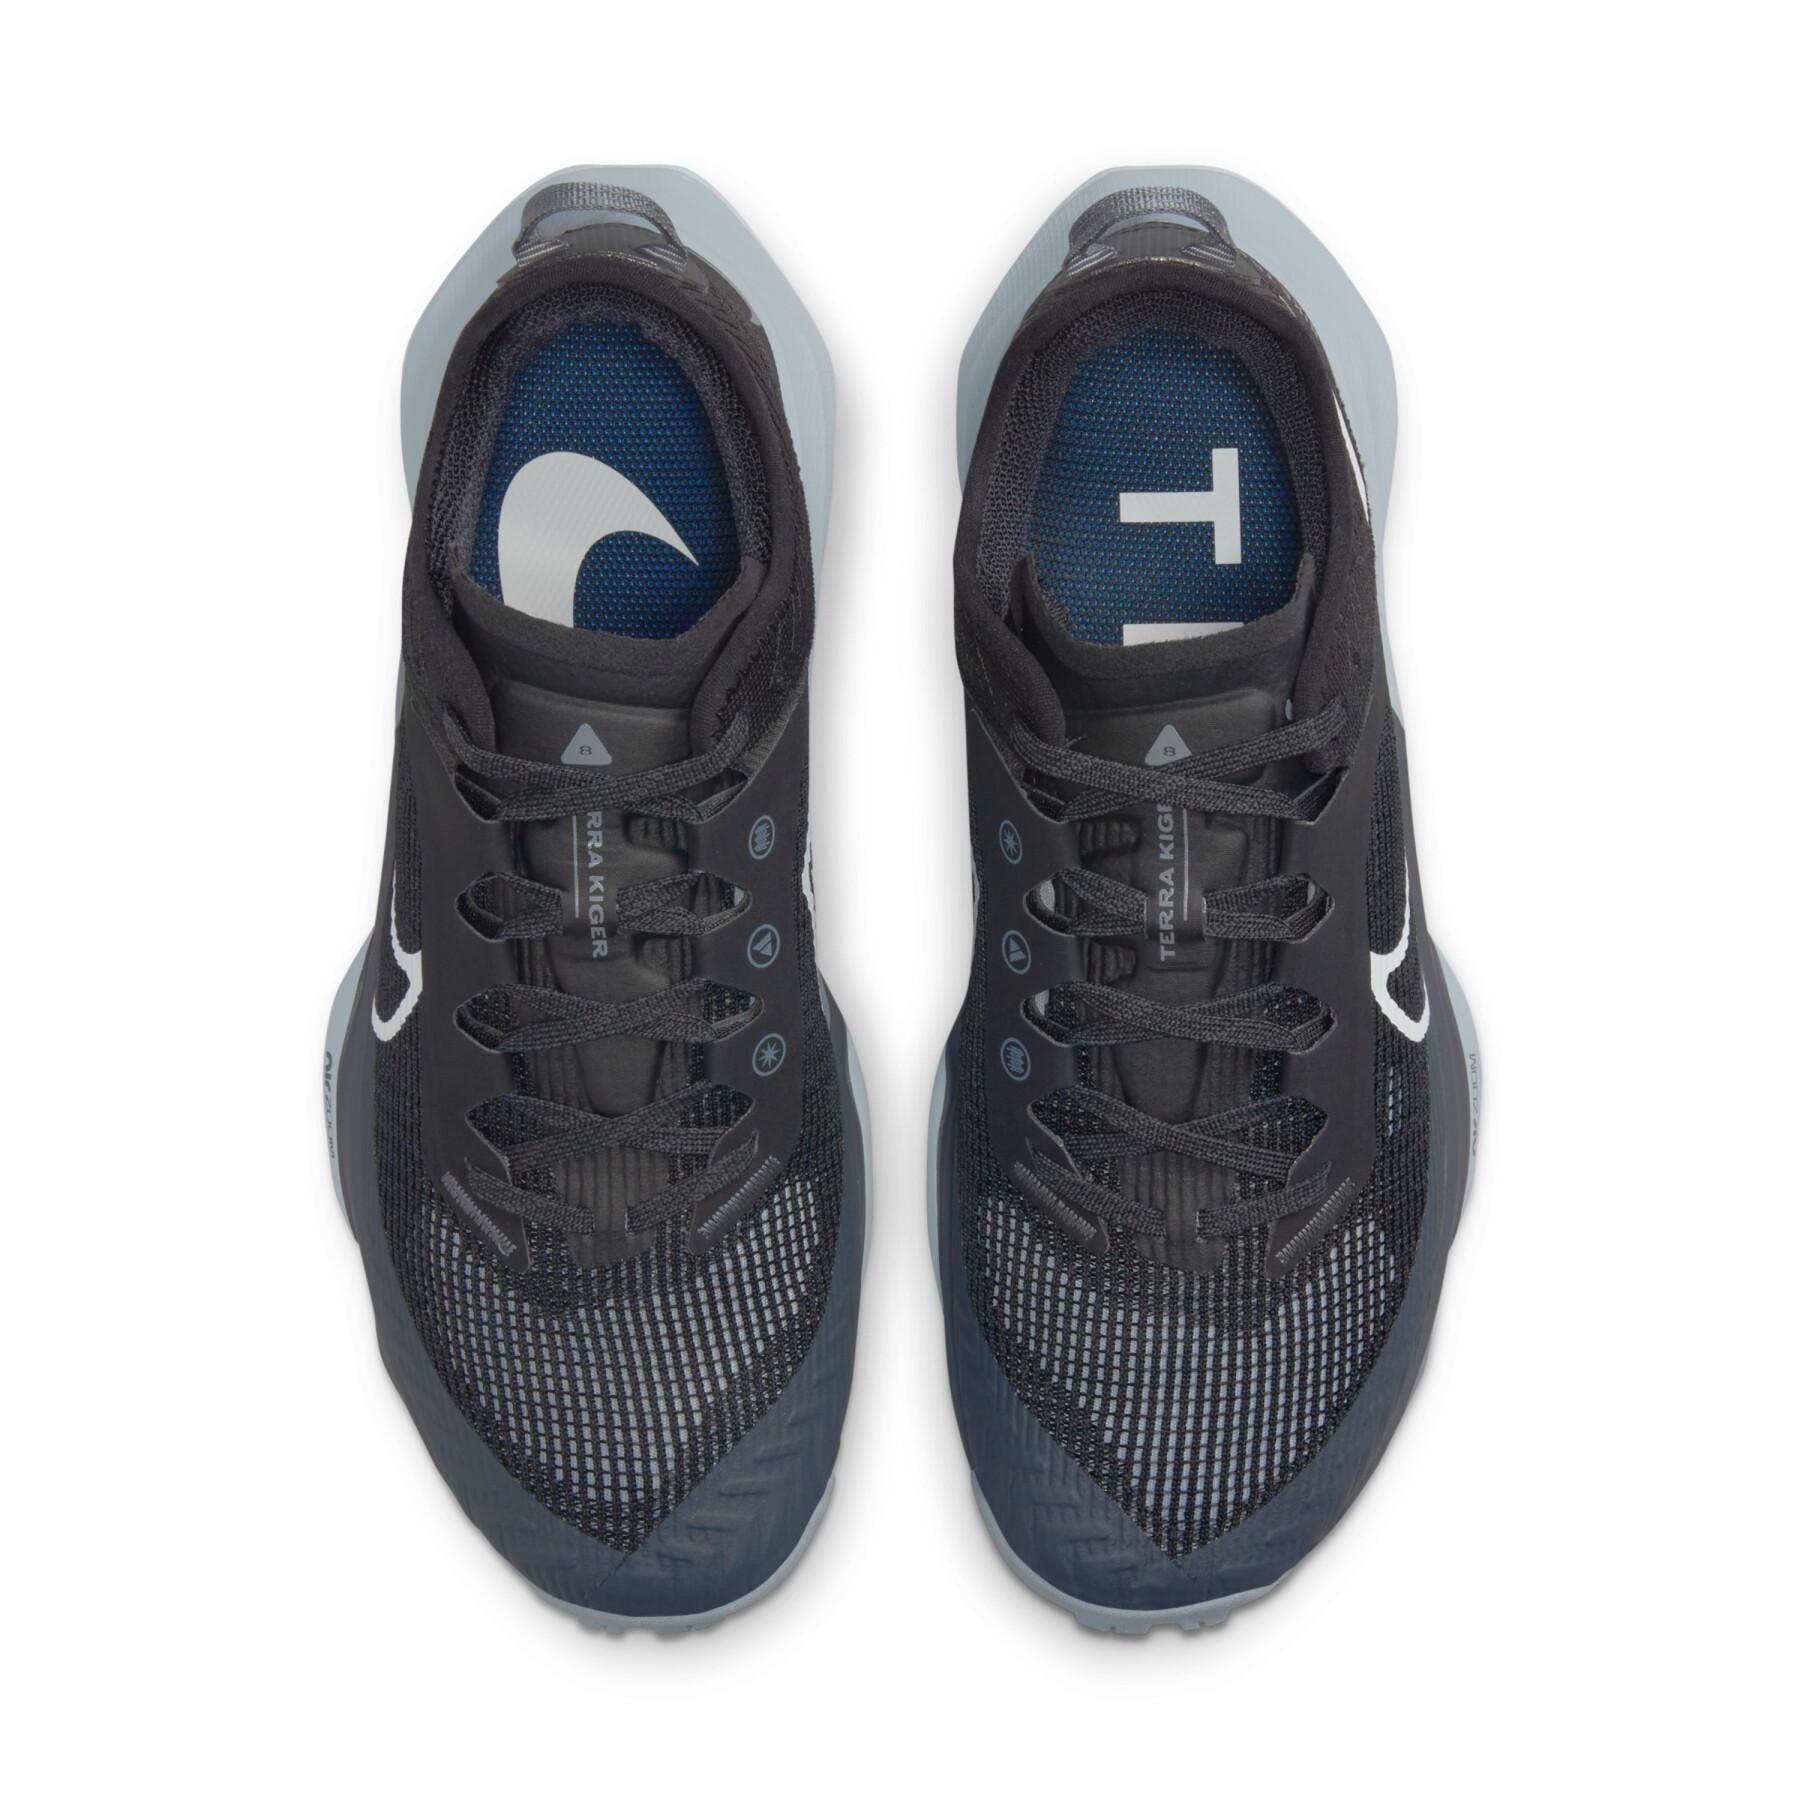 Trailrunning-Schuhe für Frauen Nike Air Zoom Terra Kiger 8